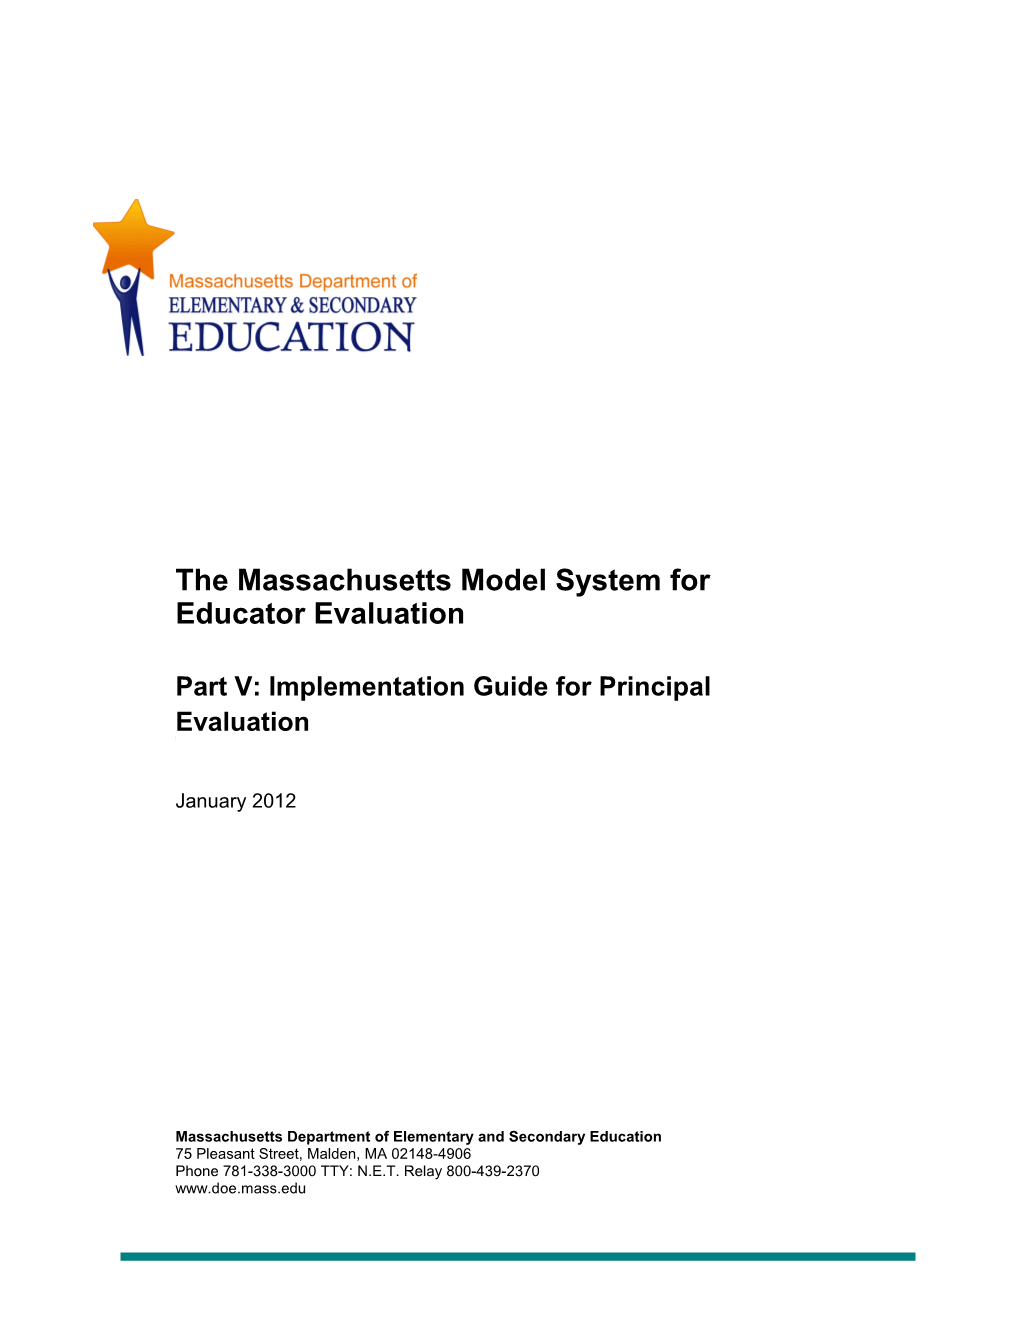 ESE Model System Part V Implementation Guide for Principal Evaluation